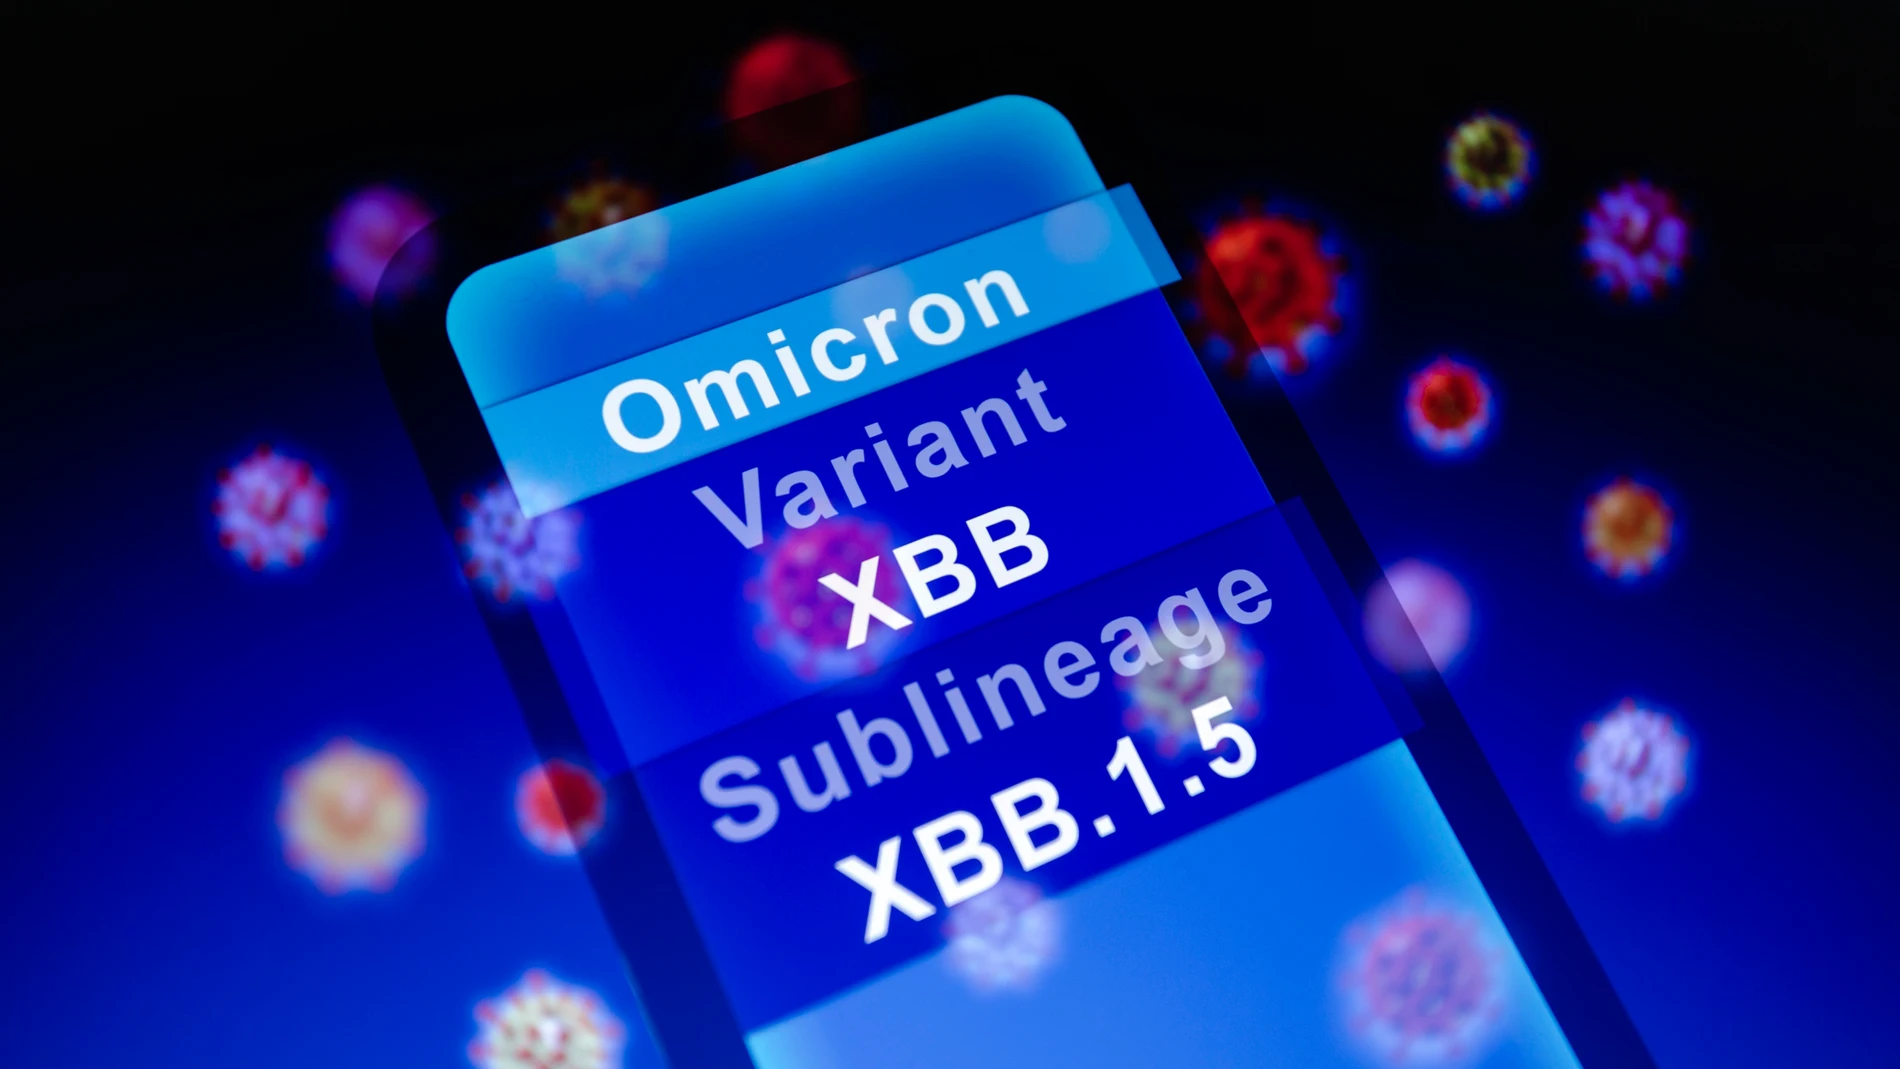 La frase 'Ómicron, variante XBB y su sublinaje XBB.1.5'' mostrada en un smartphone con fondo de representación visual de virus.05/01/2023